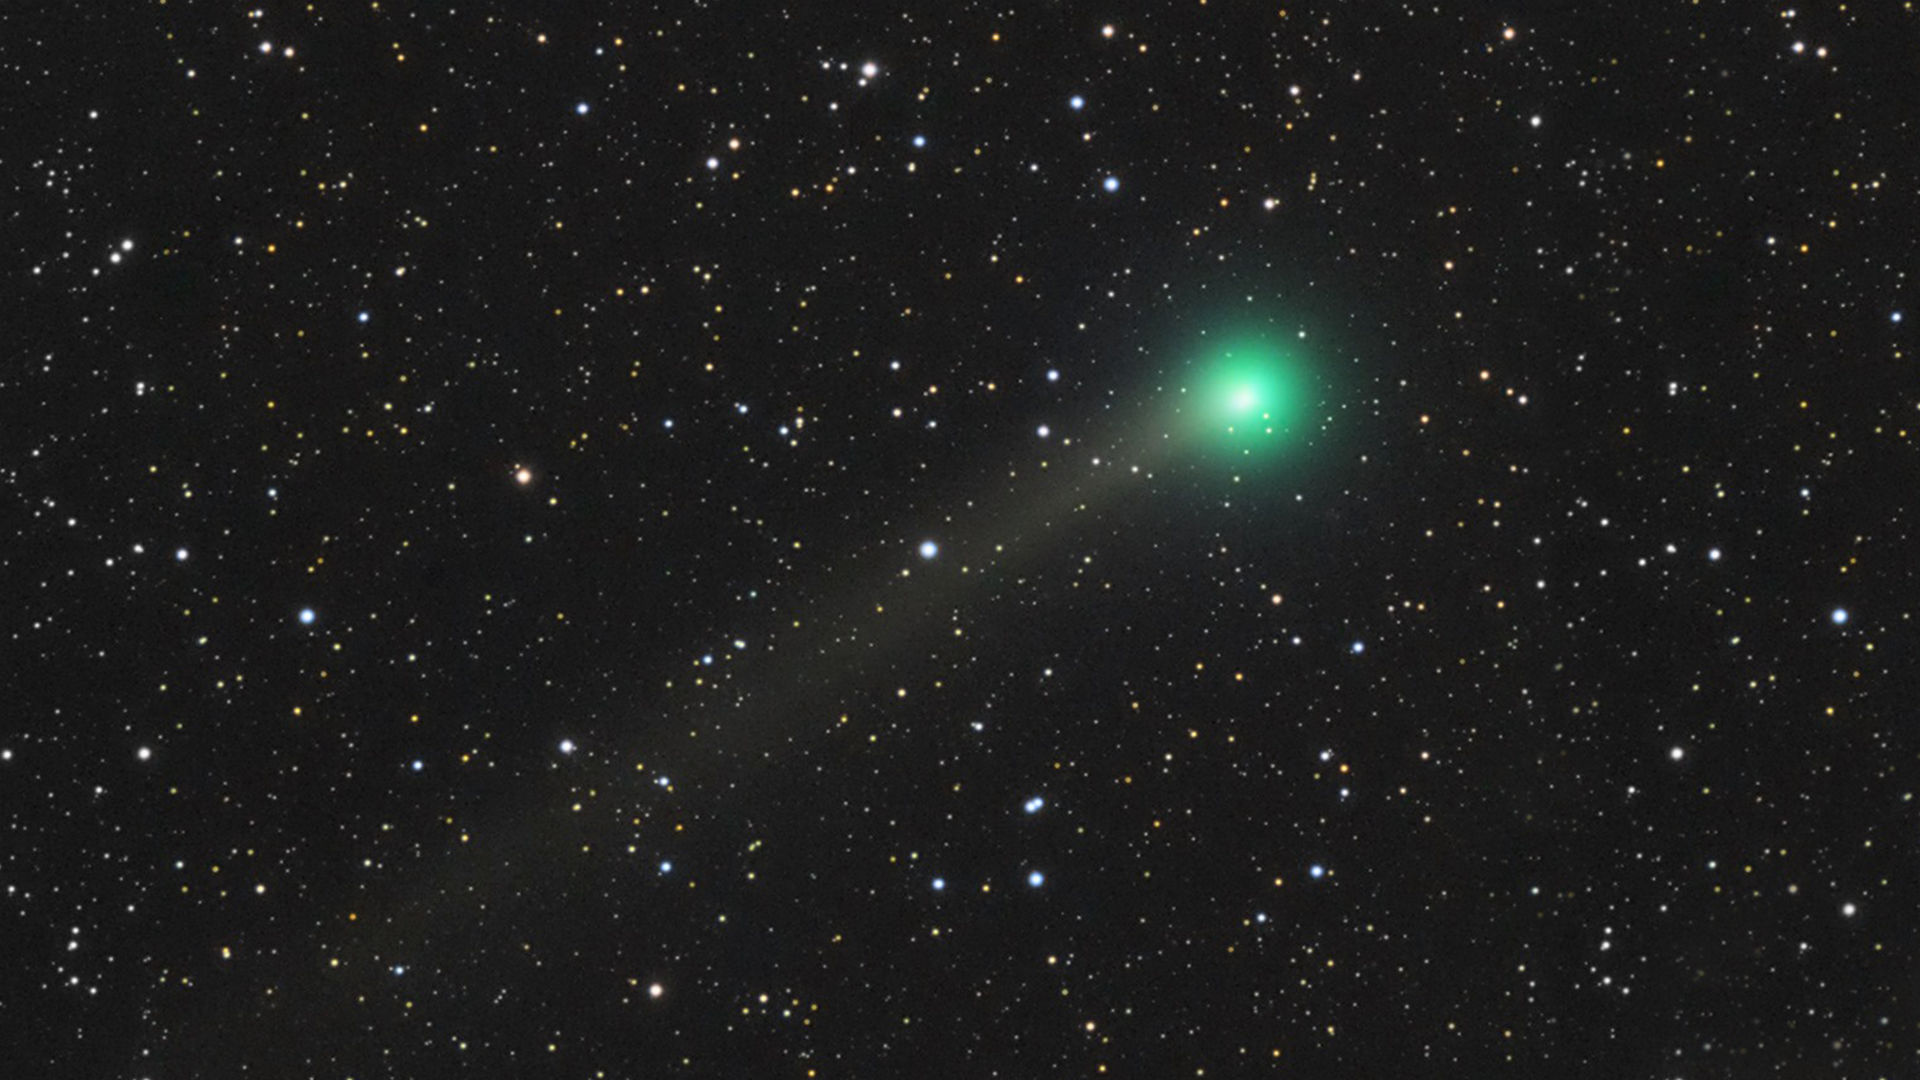 Комета Lemmon (C/2019 U6) достигает максимальной яркости